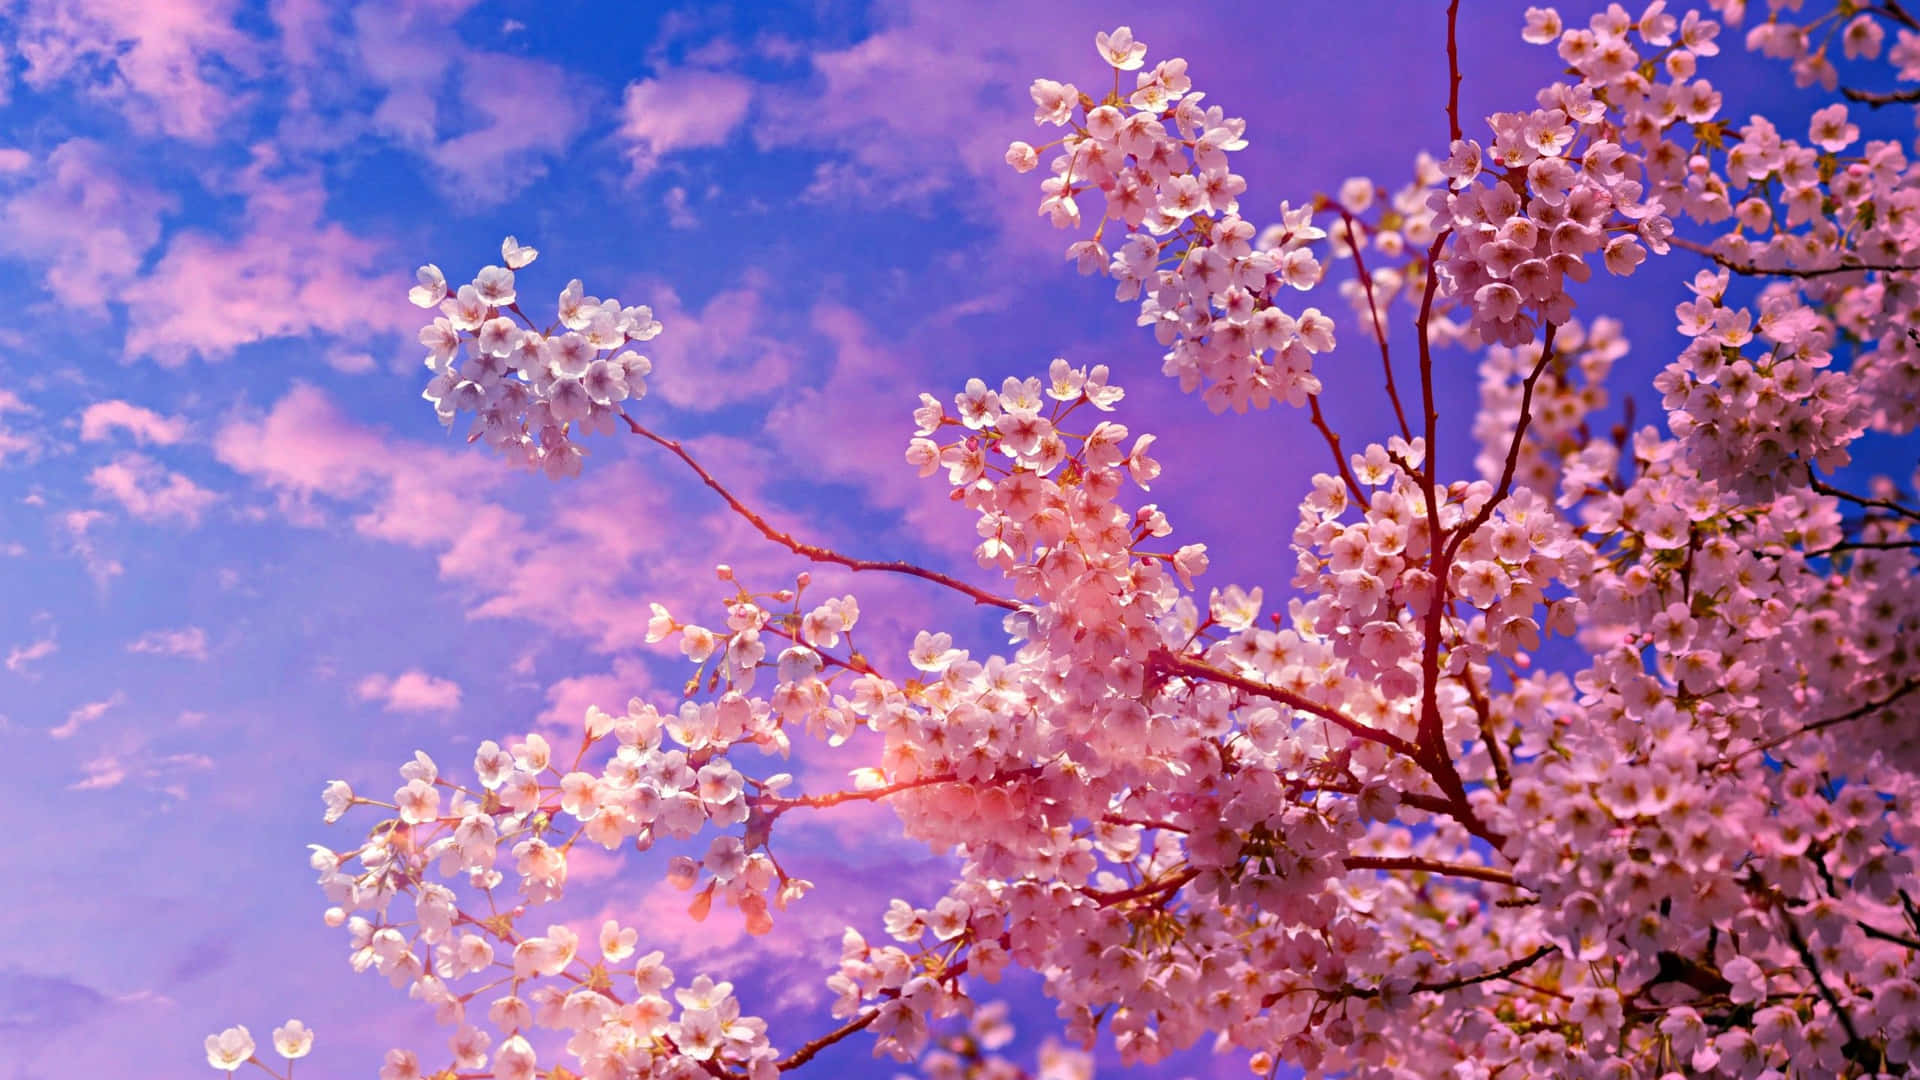 Unavista Pintoresca De Un Árbol De Flores De Sakura En Plena Floración Fondo de pantalla